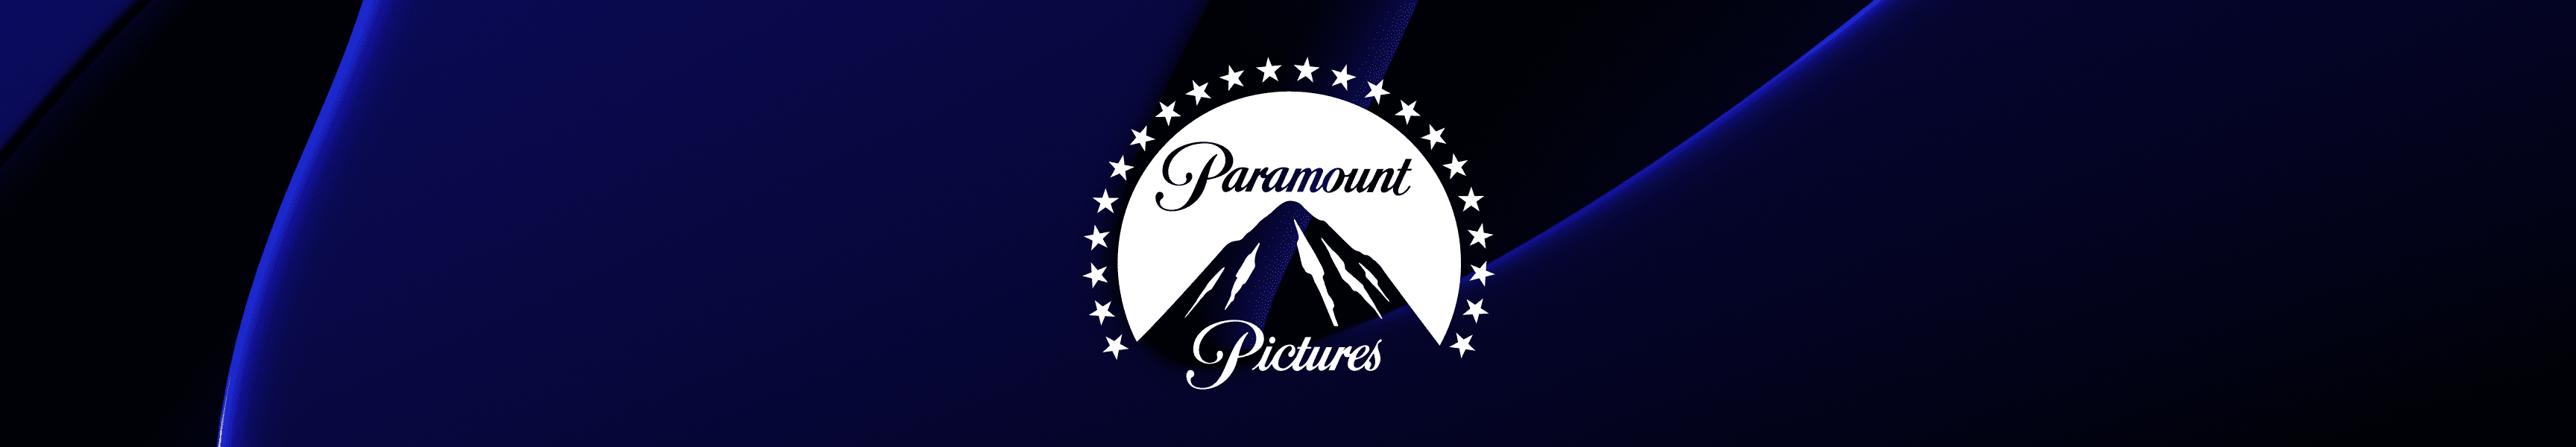 Paramount Pictures Decken